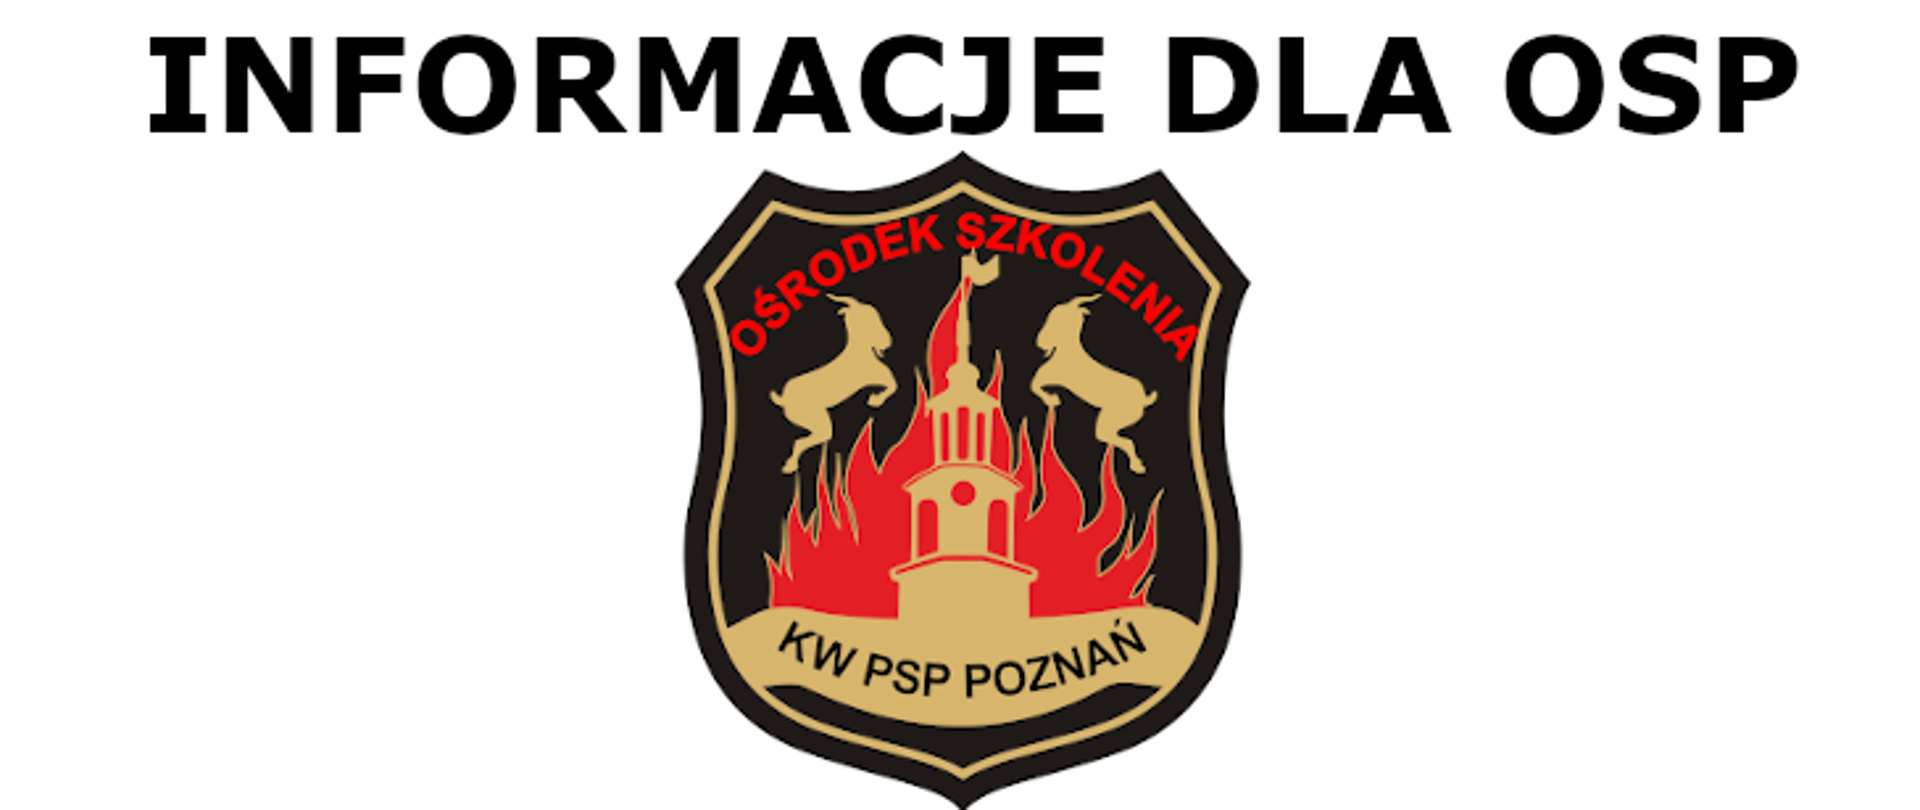 logo ośrodka szkolenia kw psp w poznaniu na którym znajduje się namalowana część ratusza , za nimi płomienie oraz dwa koziołki,
nad logo jest napis inforamcje dla osp